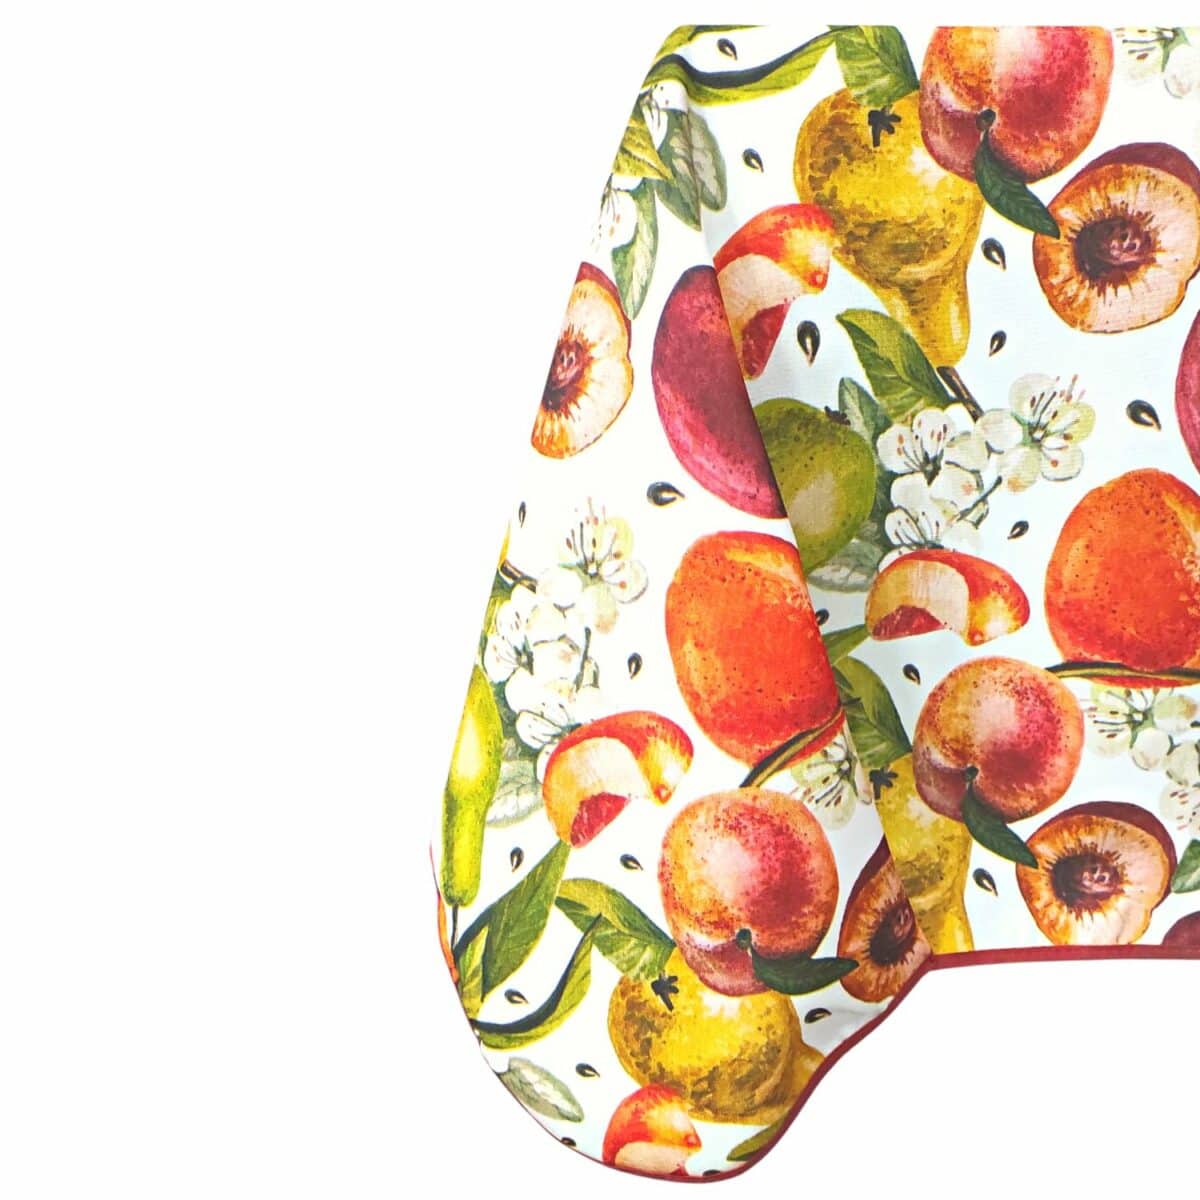 tovaglia-frutta-antimacchia-idrorepellente-no-stiro-mele-pere-pesche-multicolore-zoom